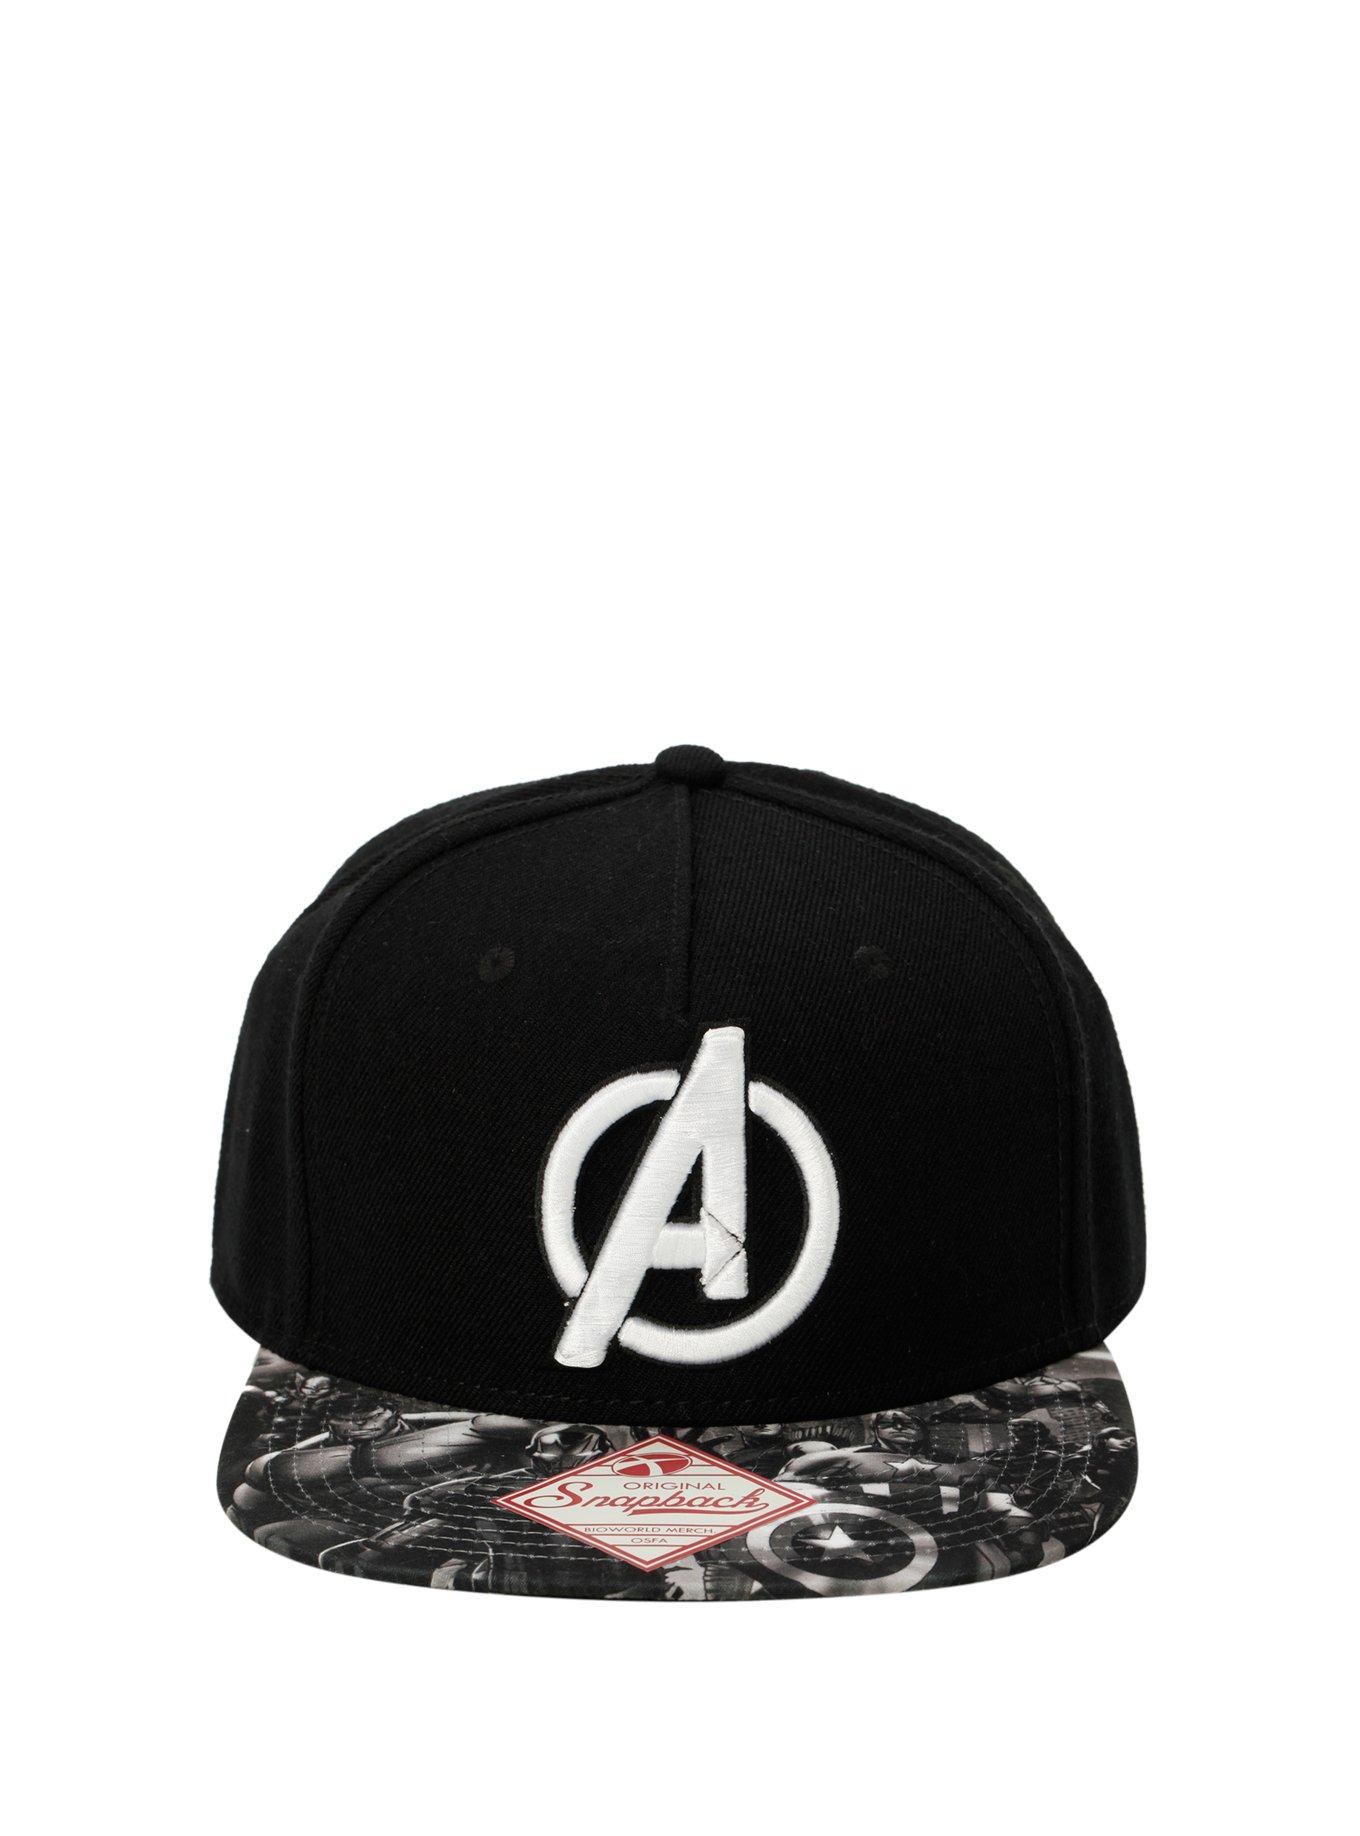 Marvel Avengers Black & White Snapback Hat, , alternate